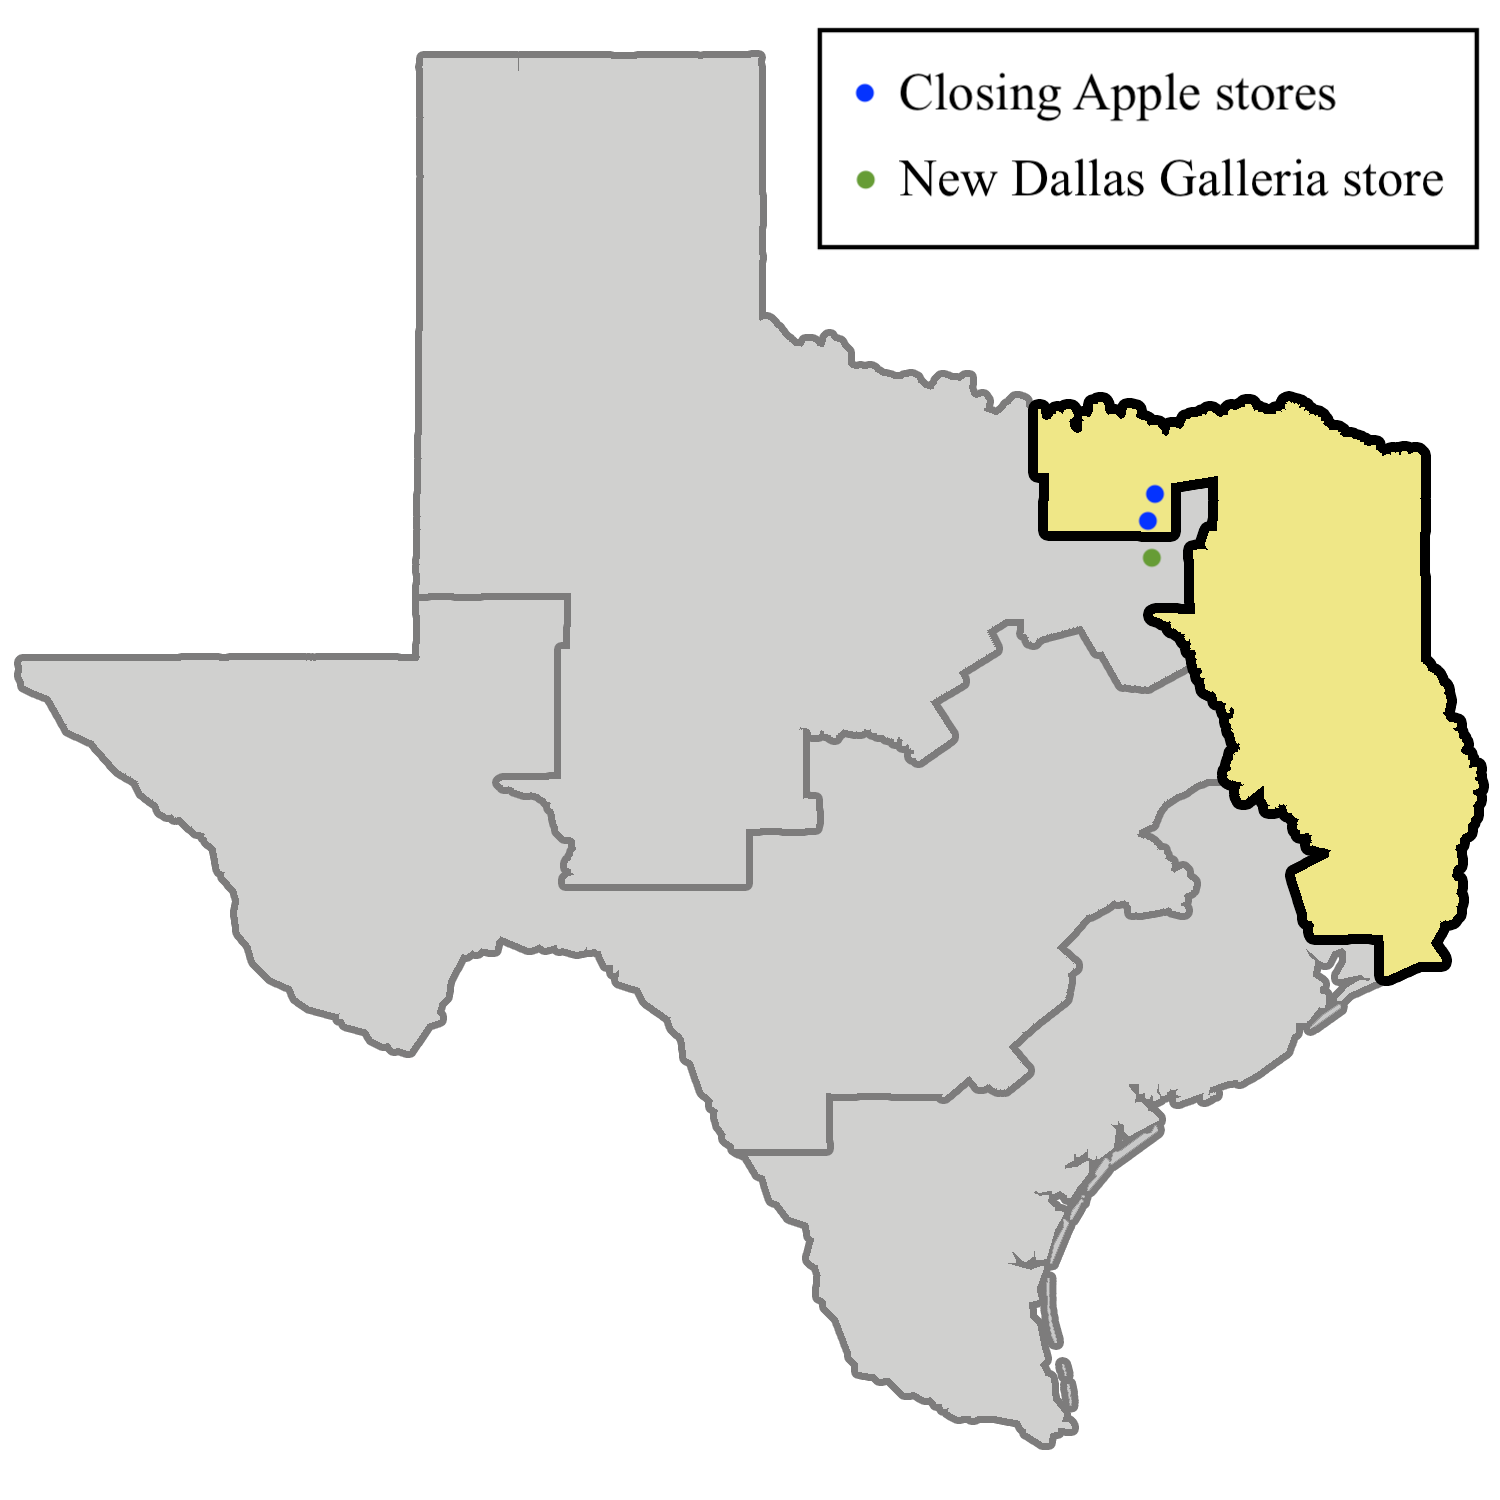 Galleria Dallas - Apple Store - Apple